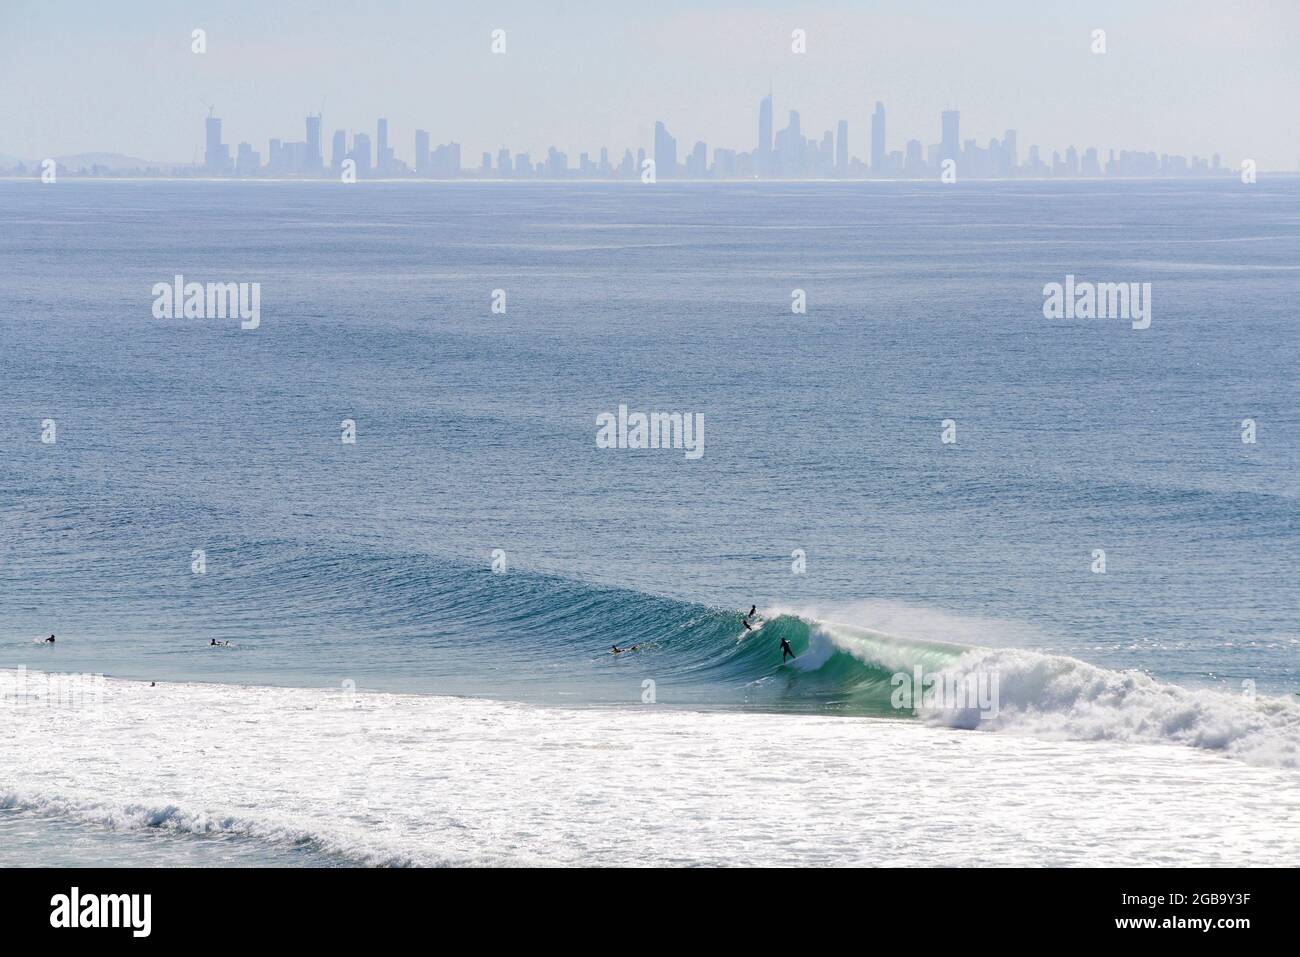 People surfing in Kirra, Gold Coast, Australia Stock Photo